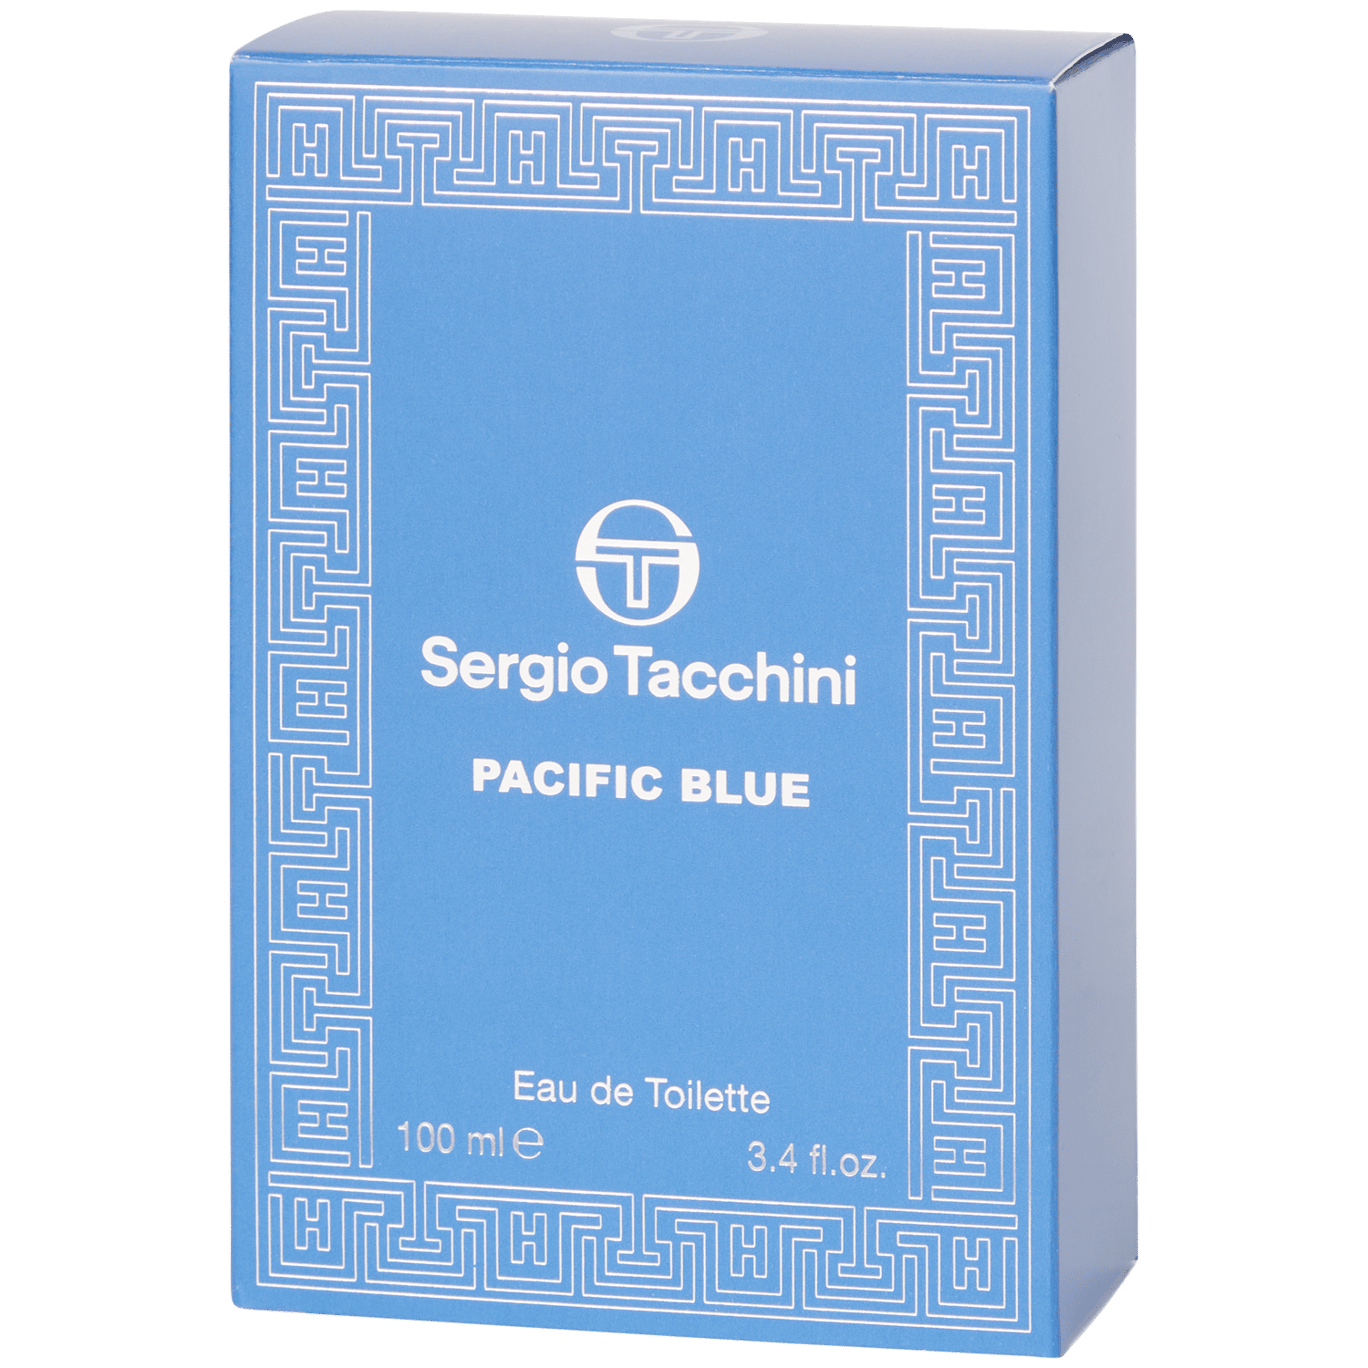 Sergio Tacchini eau de toilette